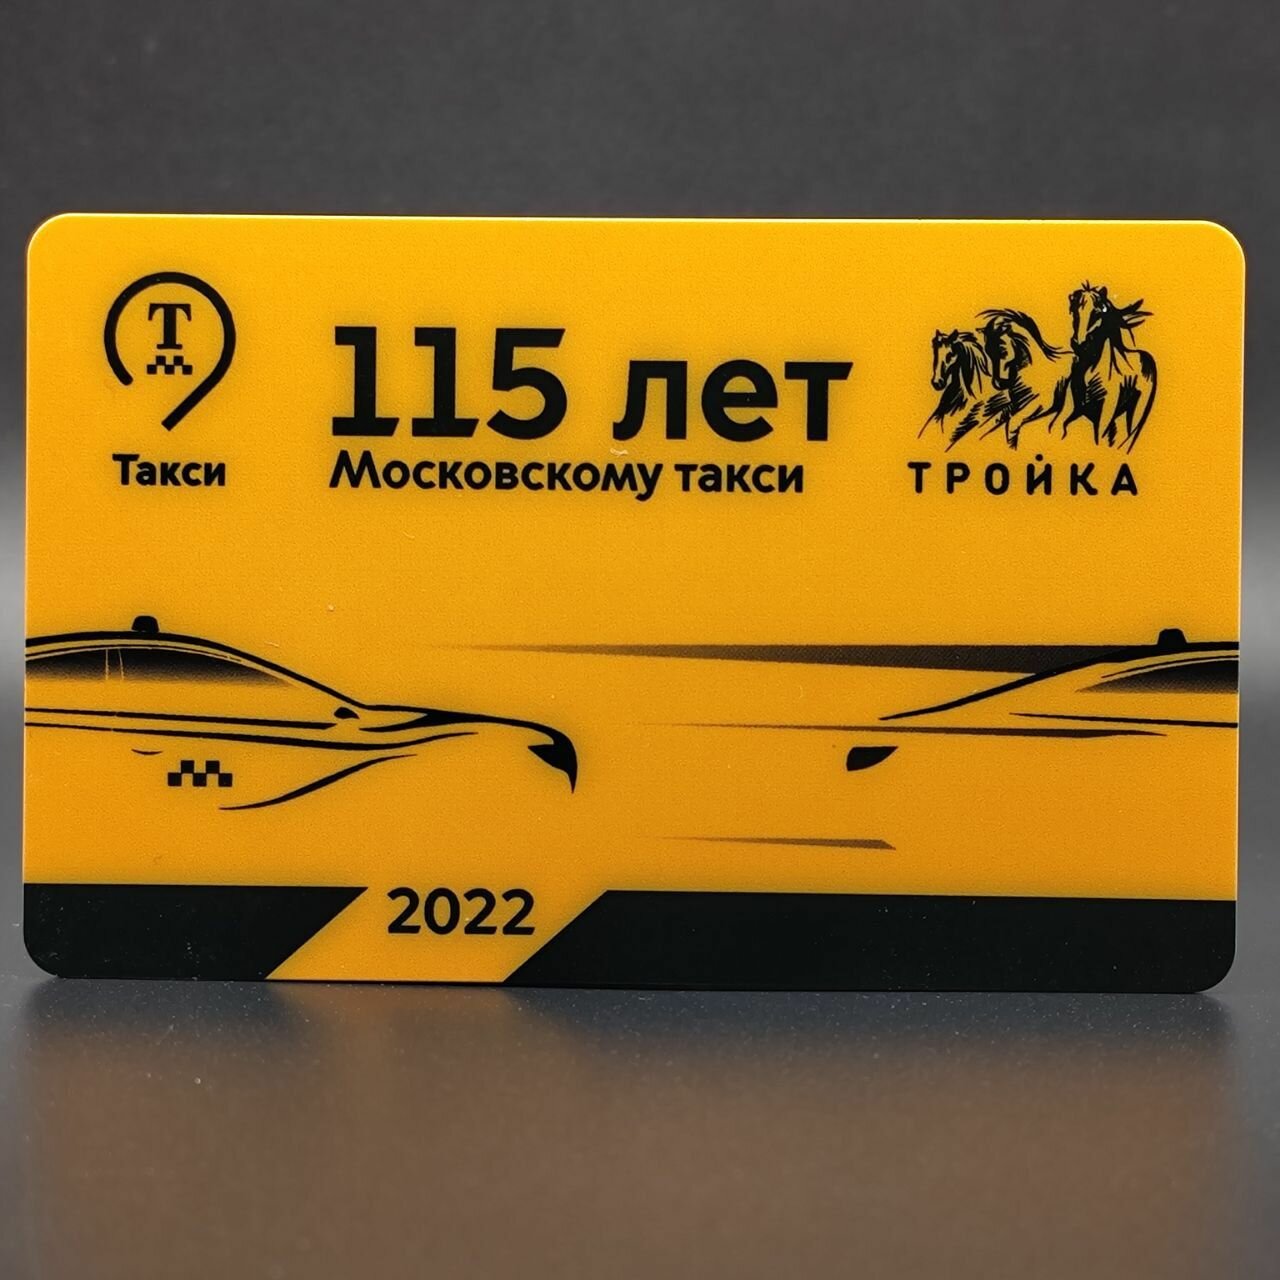 Транспортная карта метро и наземного транспорта Тройка - 115 лет Московскому такси